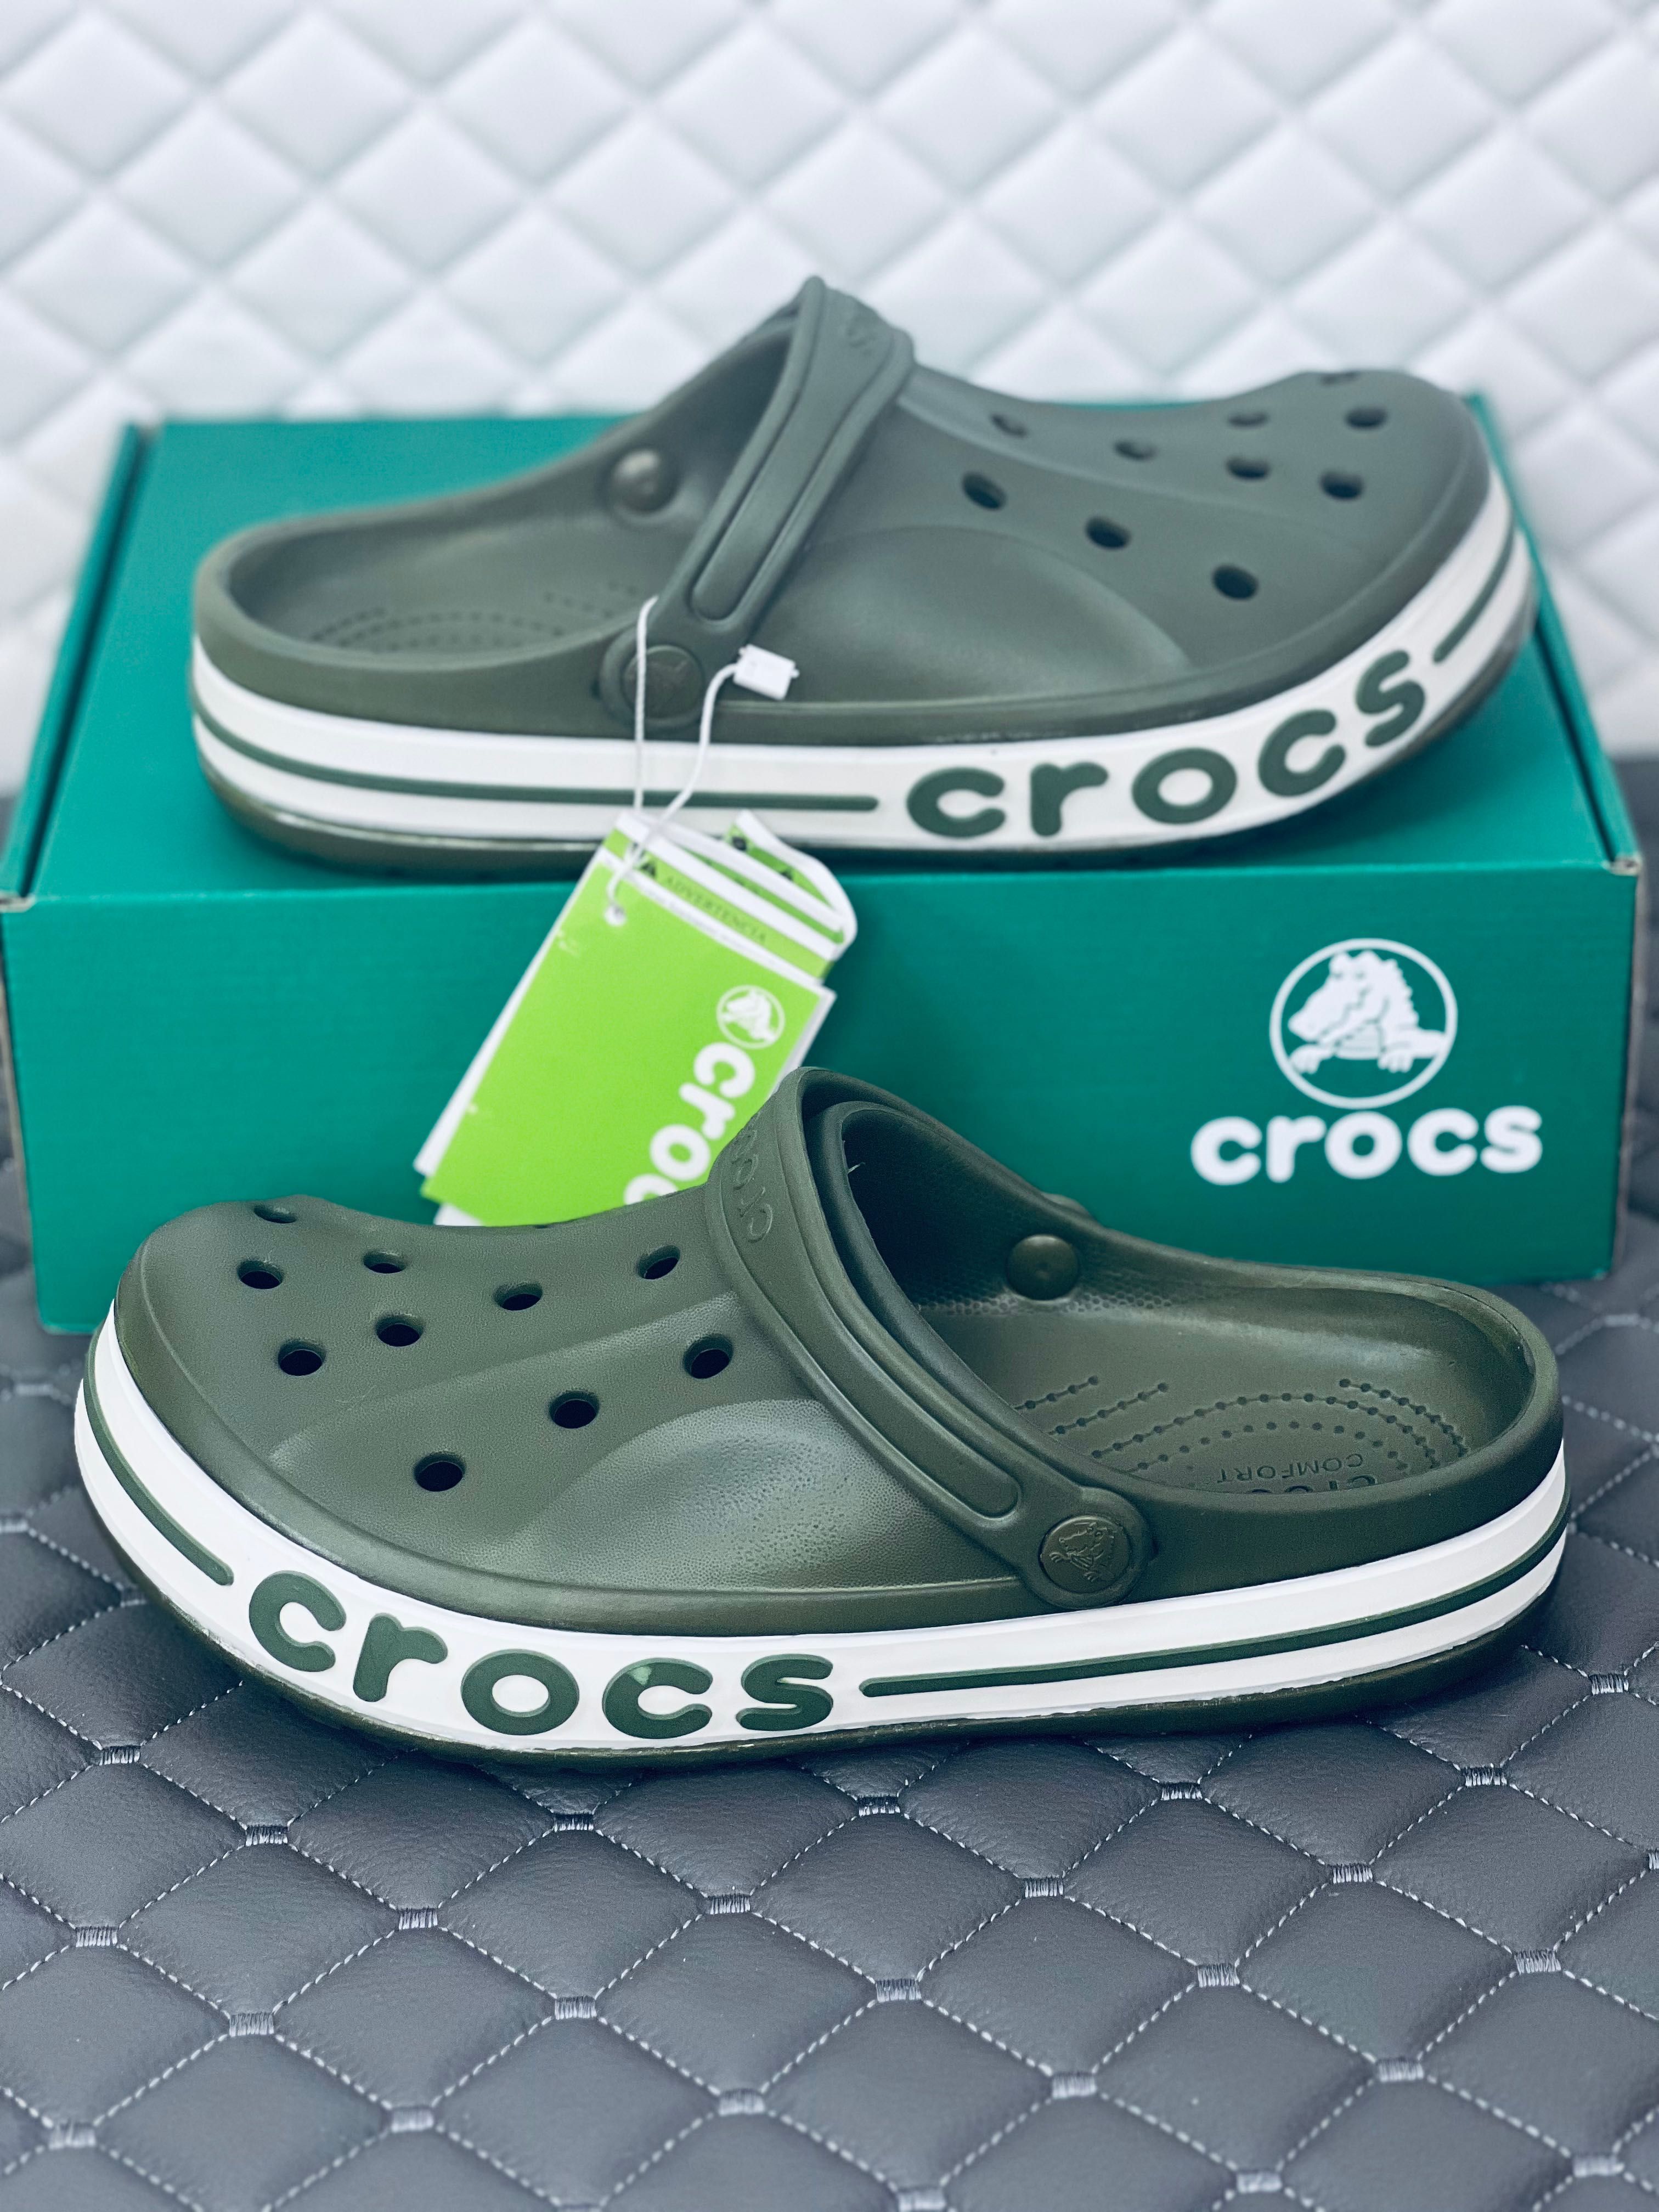 Crocs crocsband bayaband cloc khaki кроксы женские летние хаки